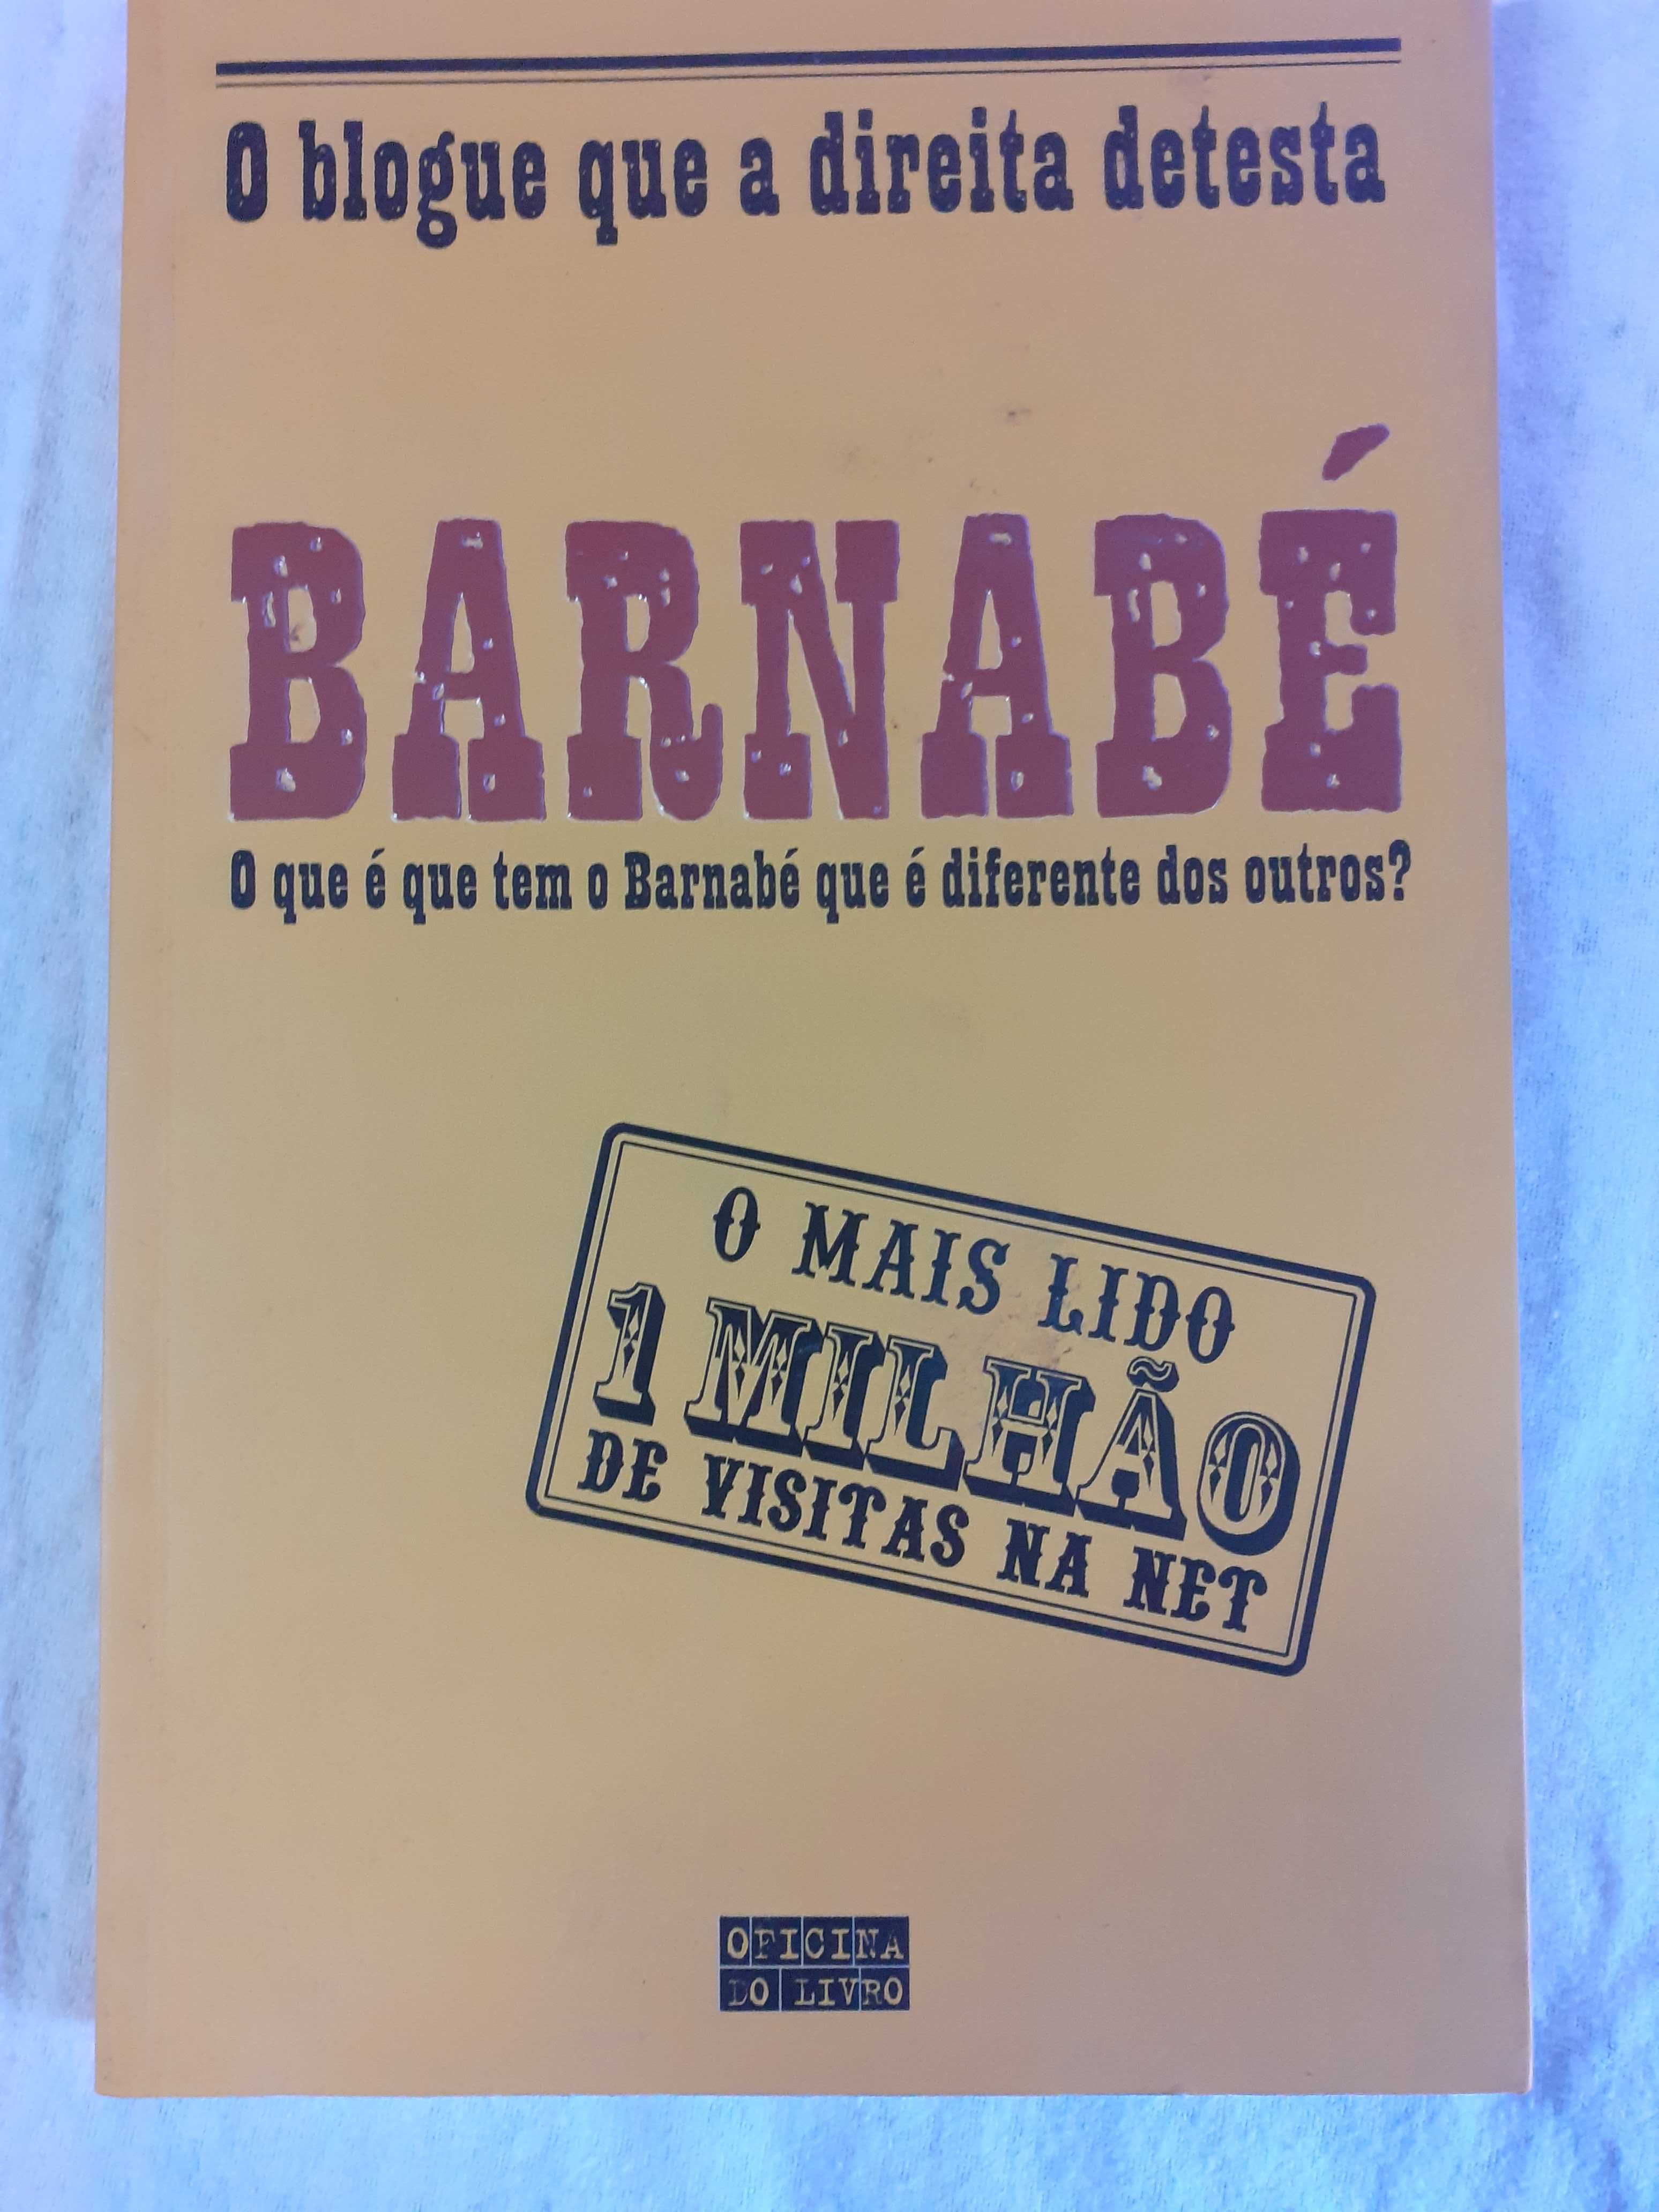 Barnabé, o blogue que a Direita detesta